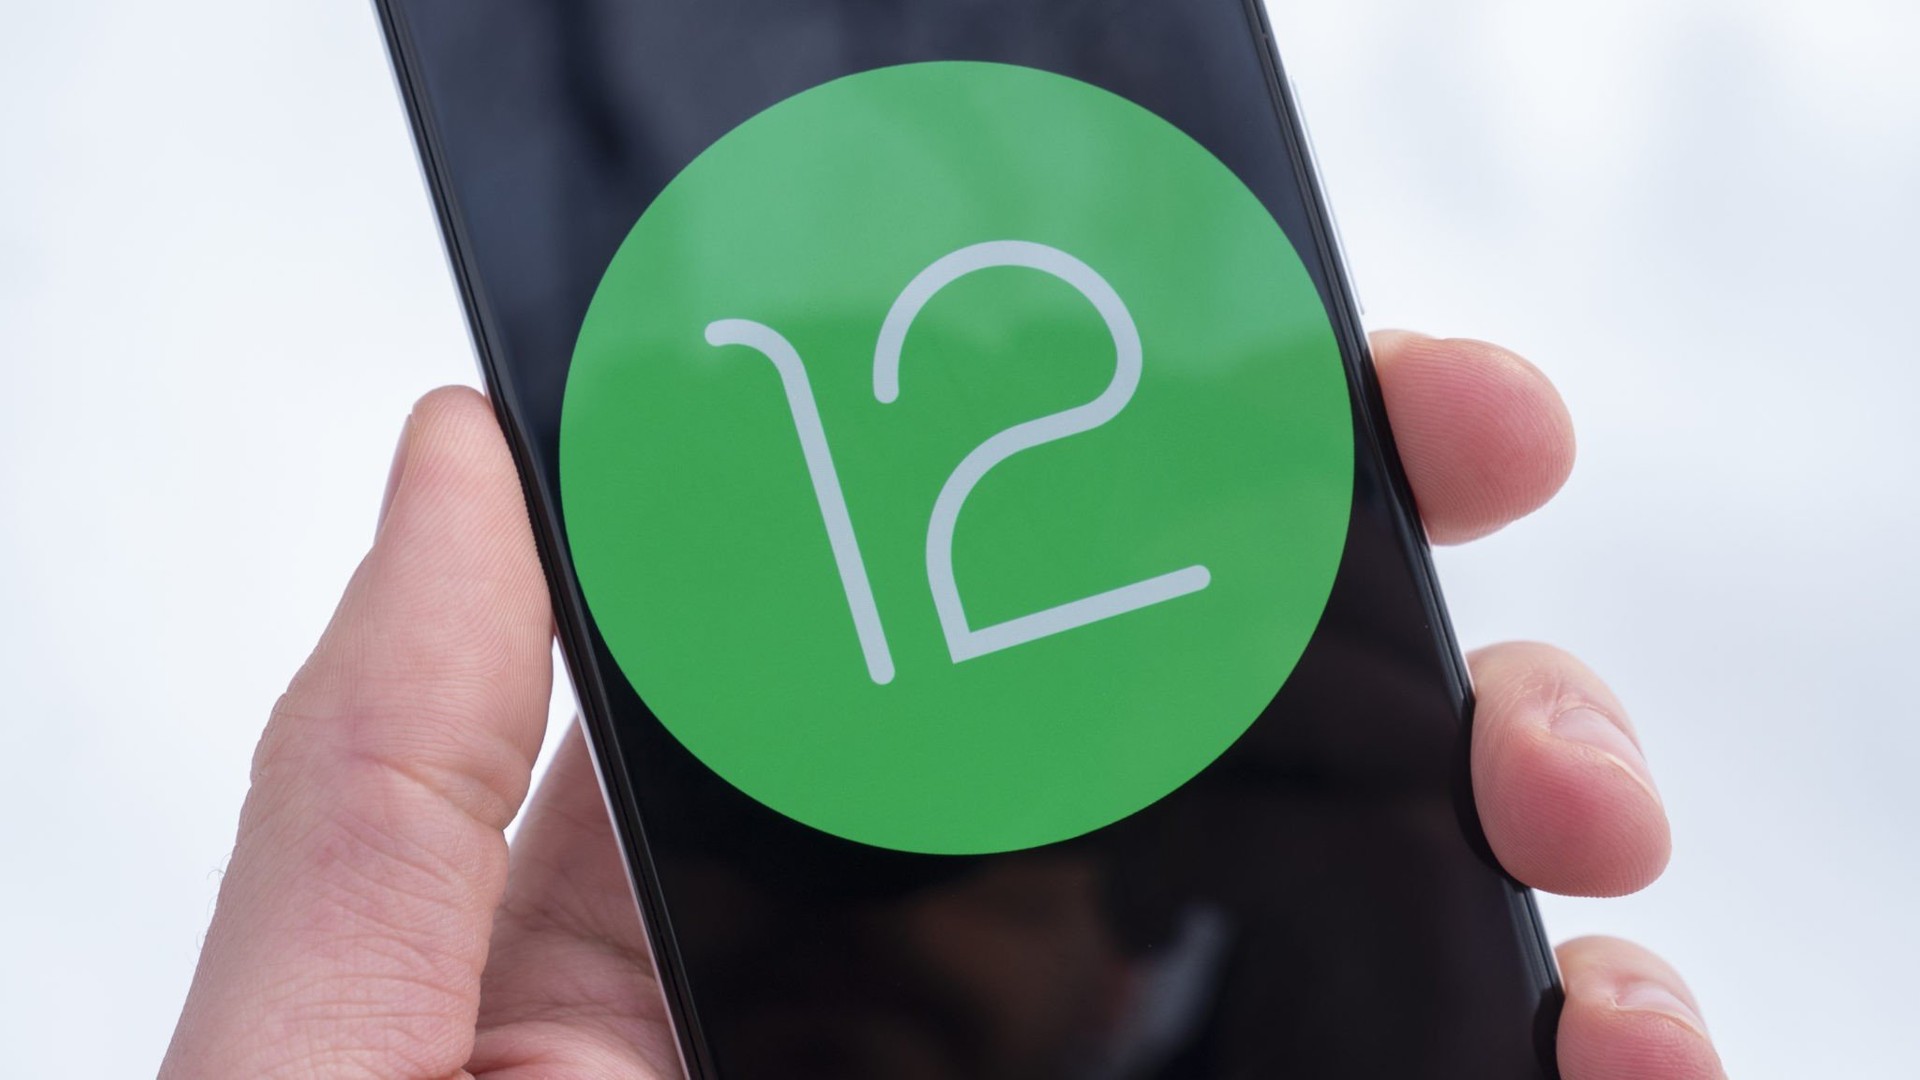 Adeus, 2G: Android 12 ganha nova opo para desabilitar modem de rede de 2 gerao